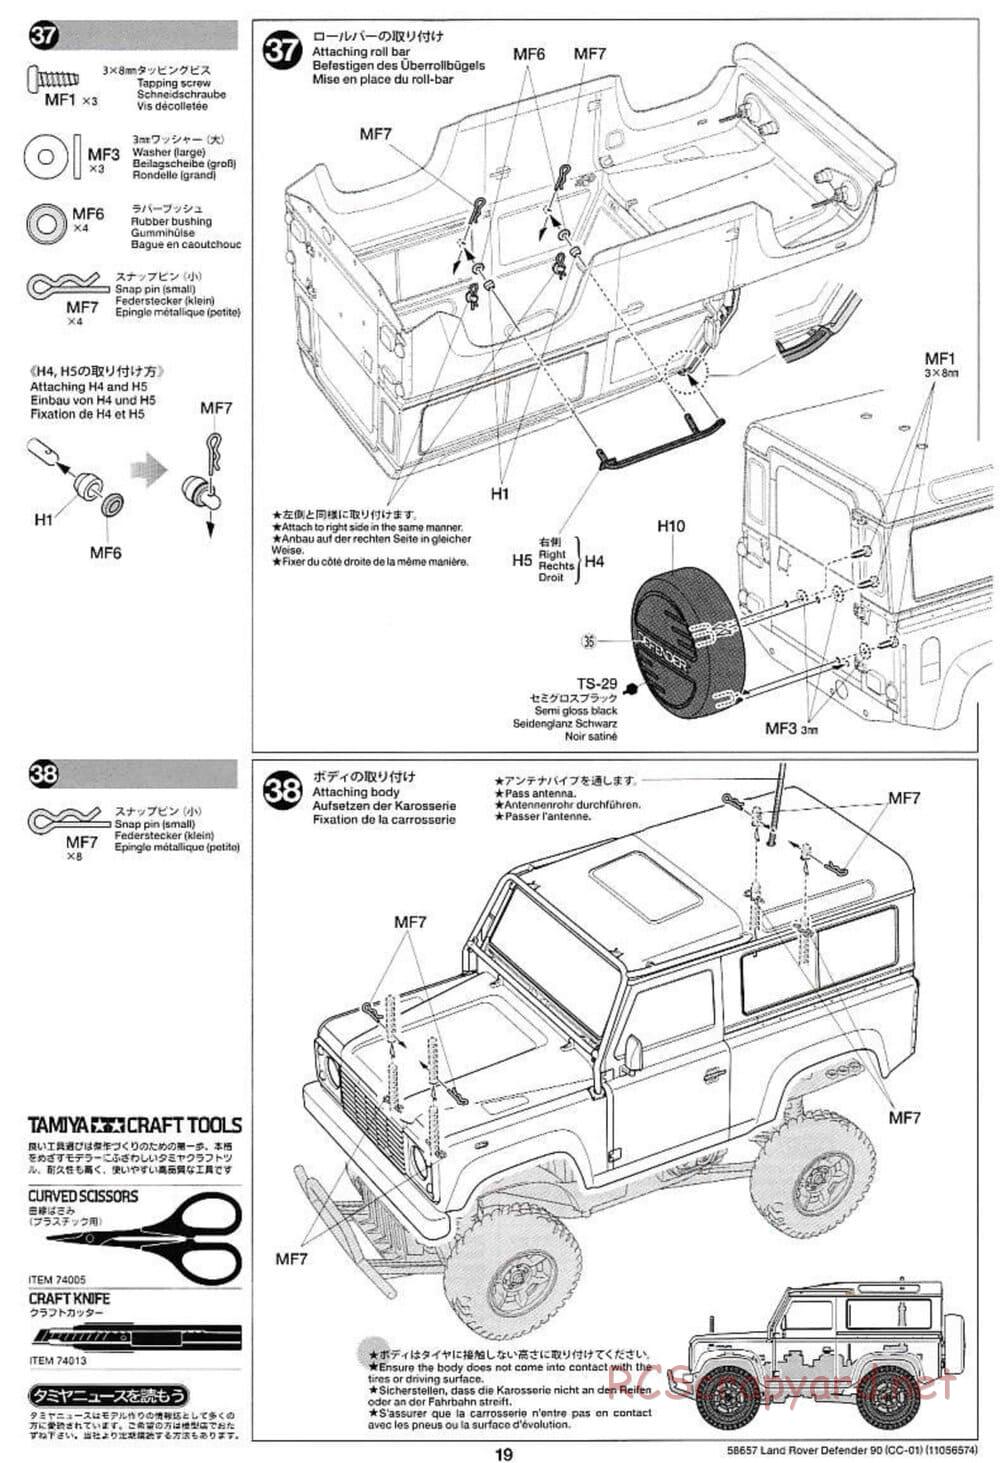 Tamiya - Land Rover Defender 90 - CC-01 Chassis - Manual - Page 19